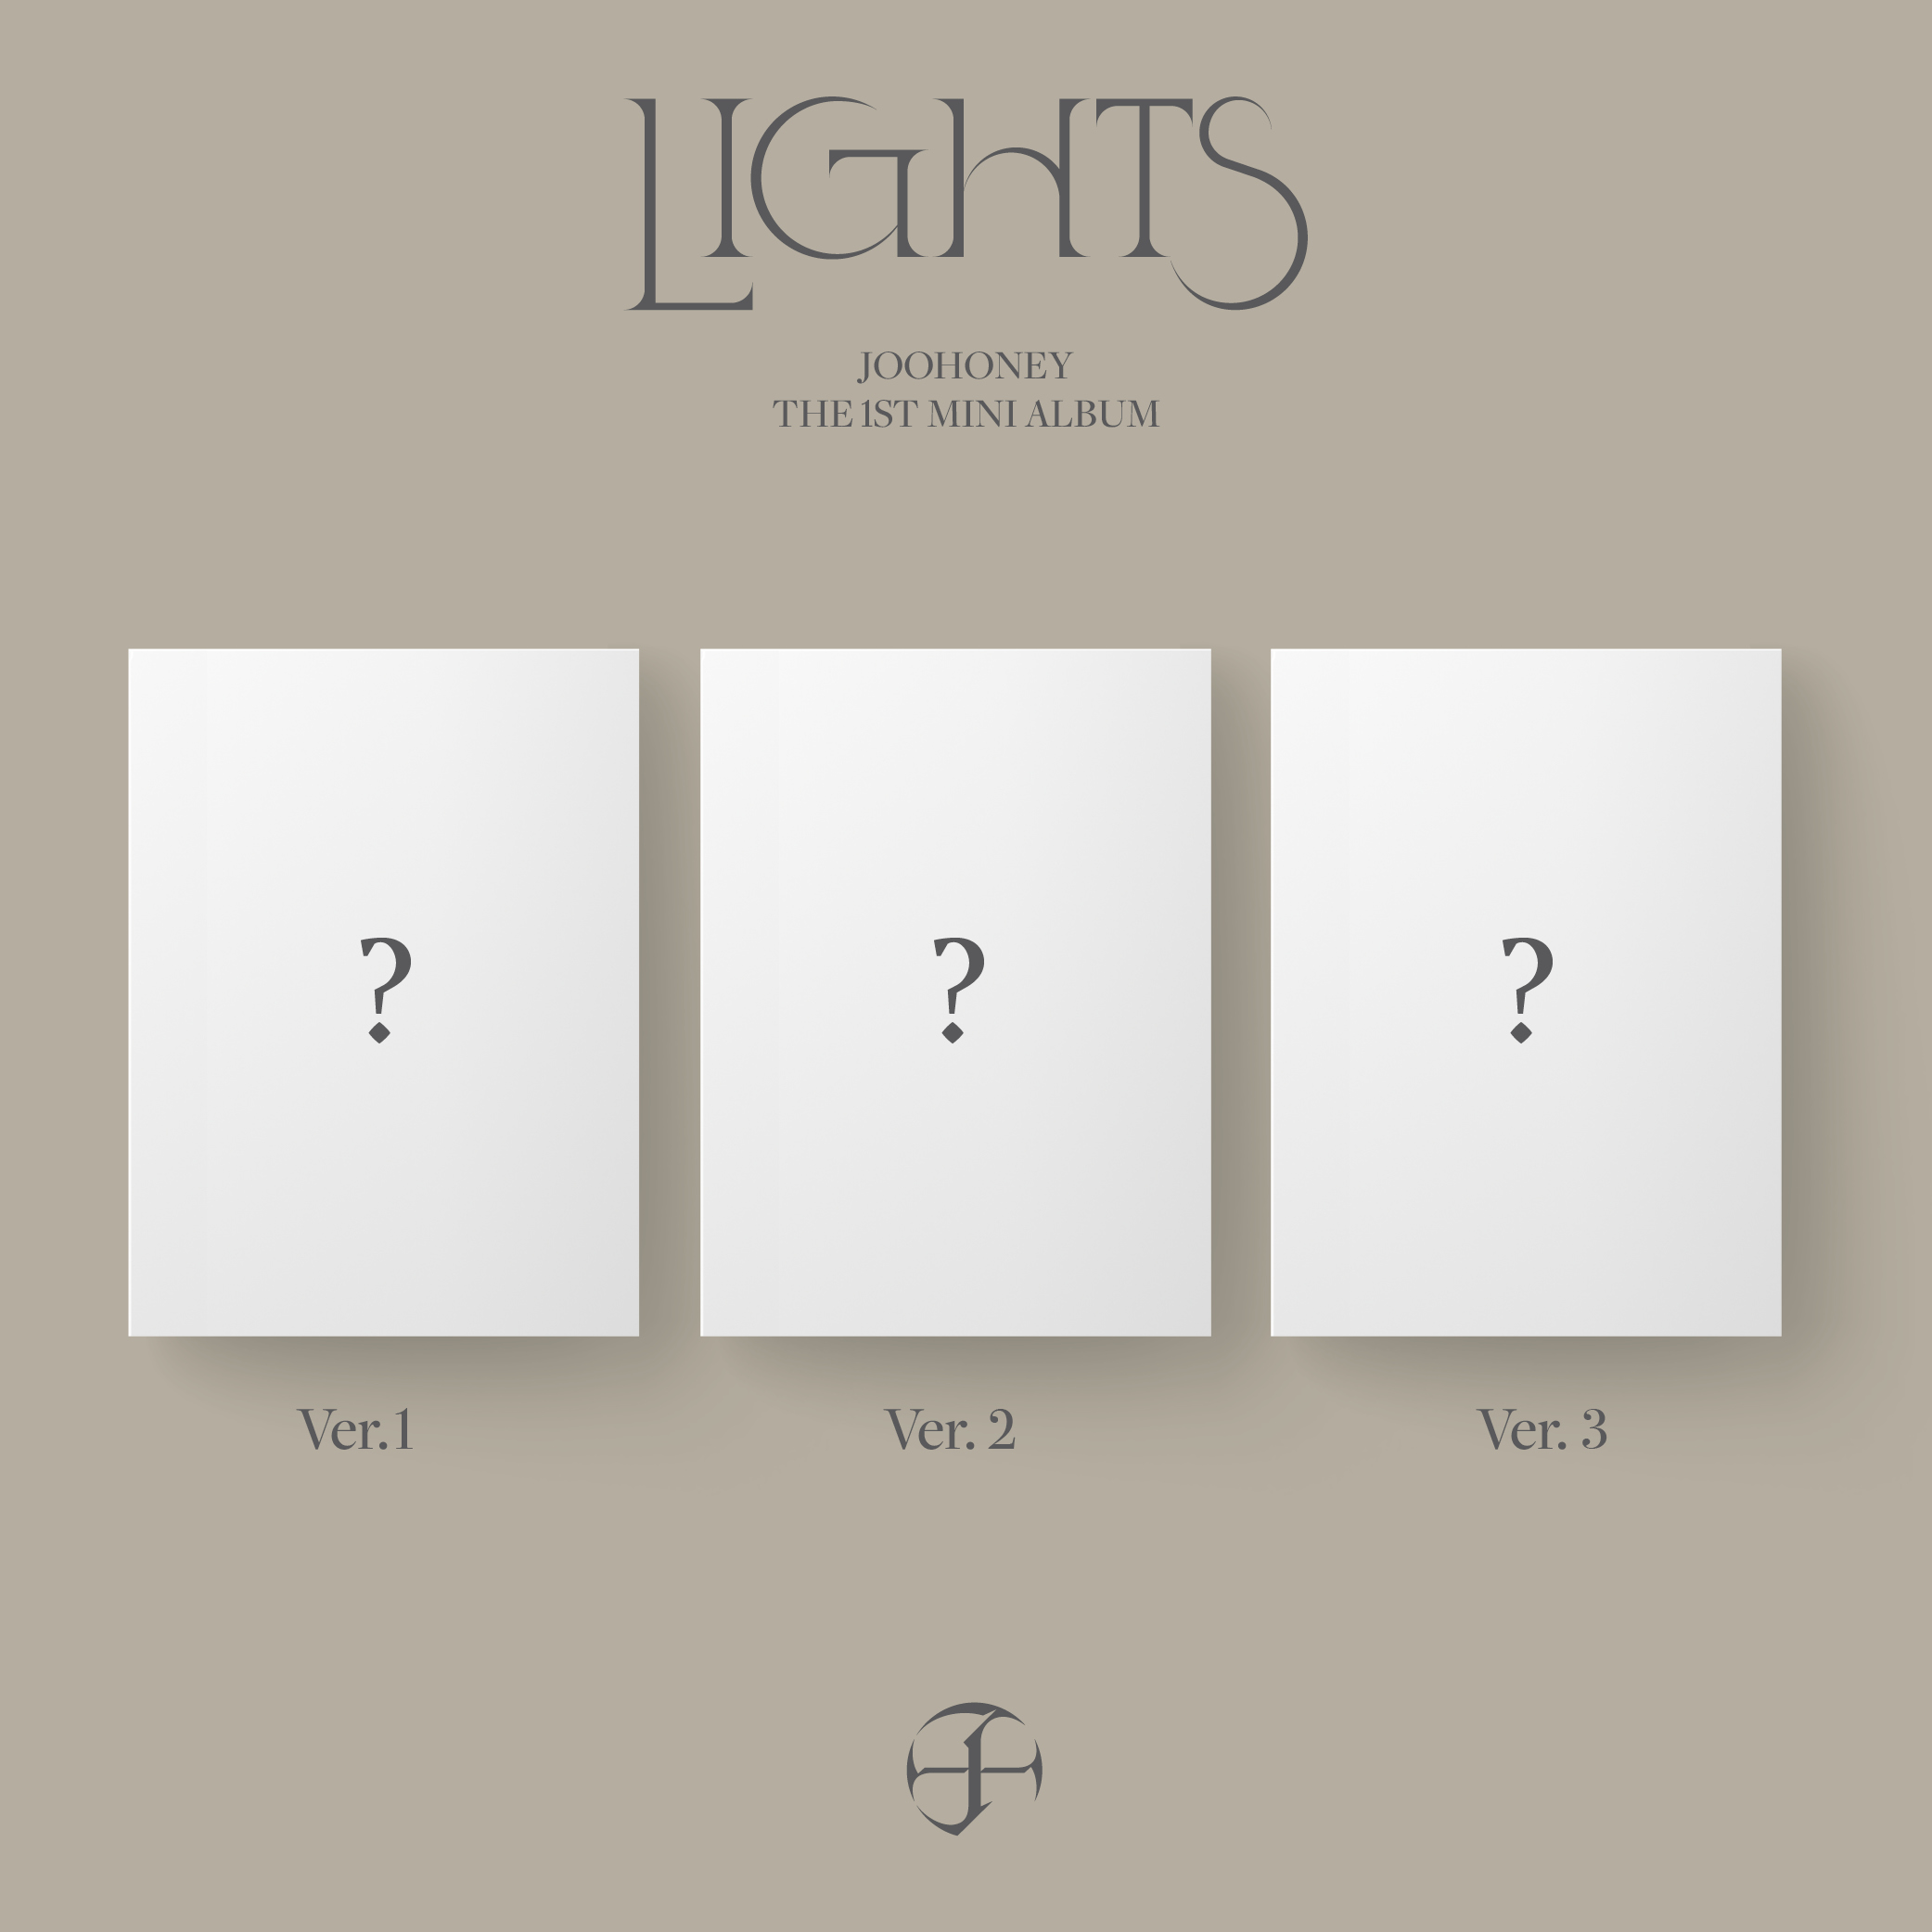 [全款 裸专] [3CD 套装] JOOHONEY - 1st Mini Album [LIGHTS] (Ver.1 + Ver.2 + Ver.3)_Jooheonbar_李周宪吧